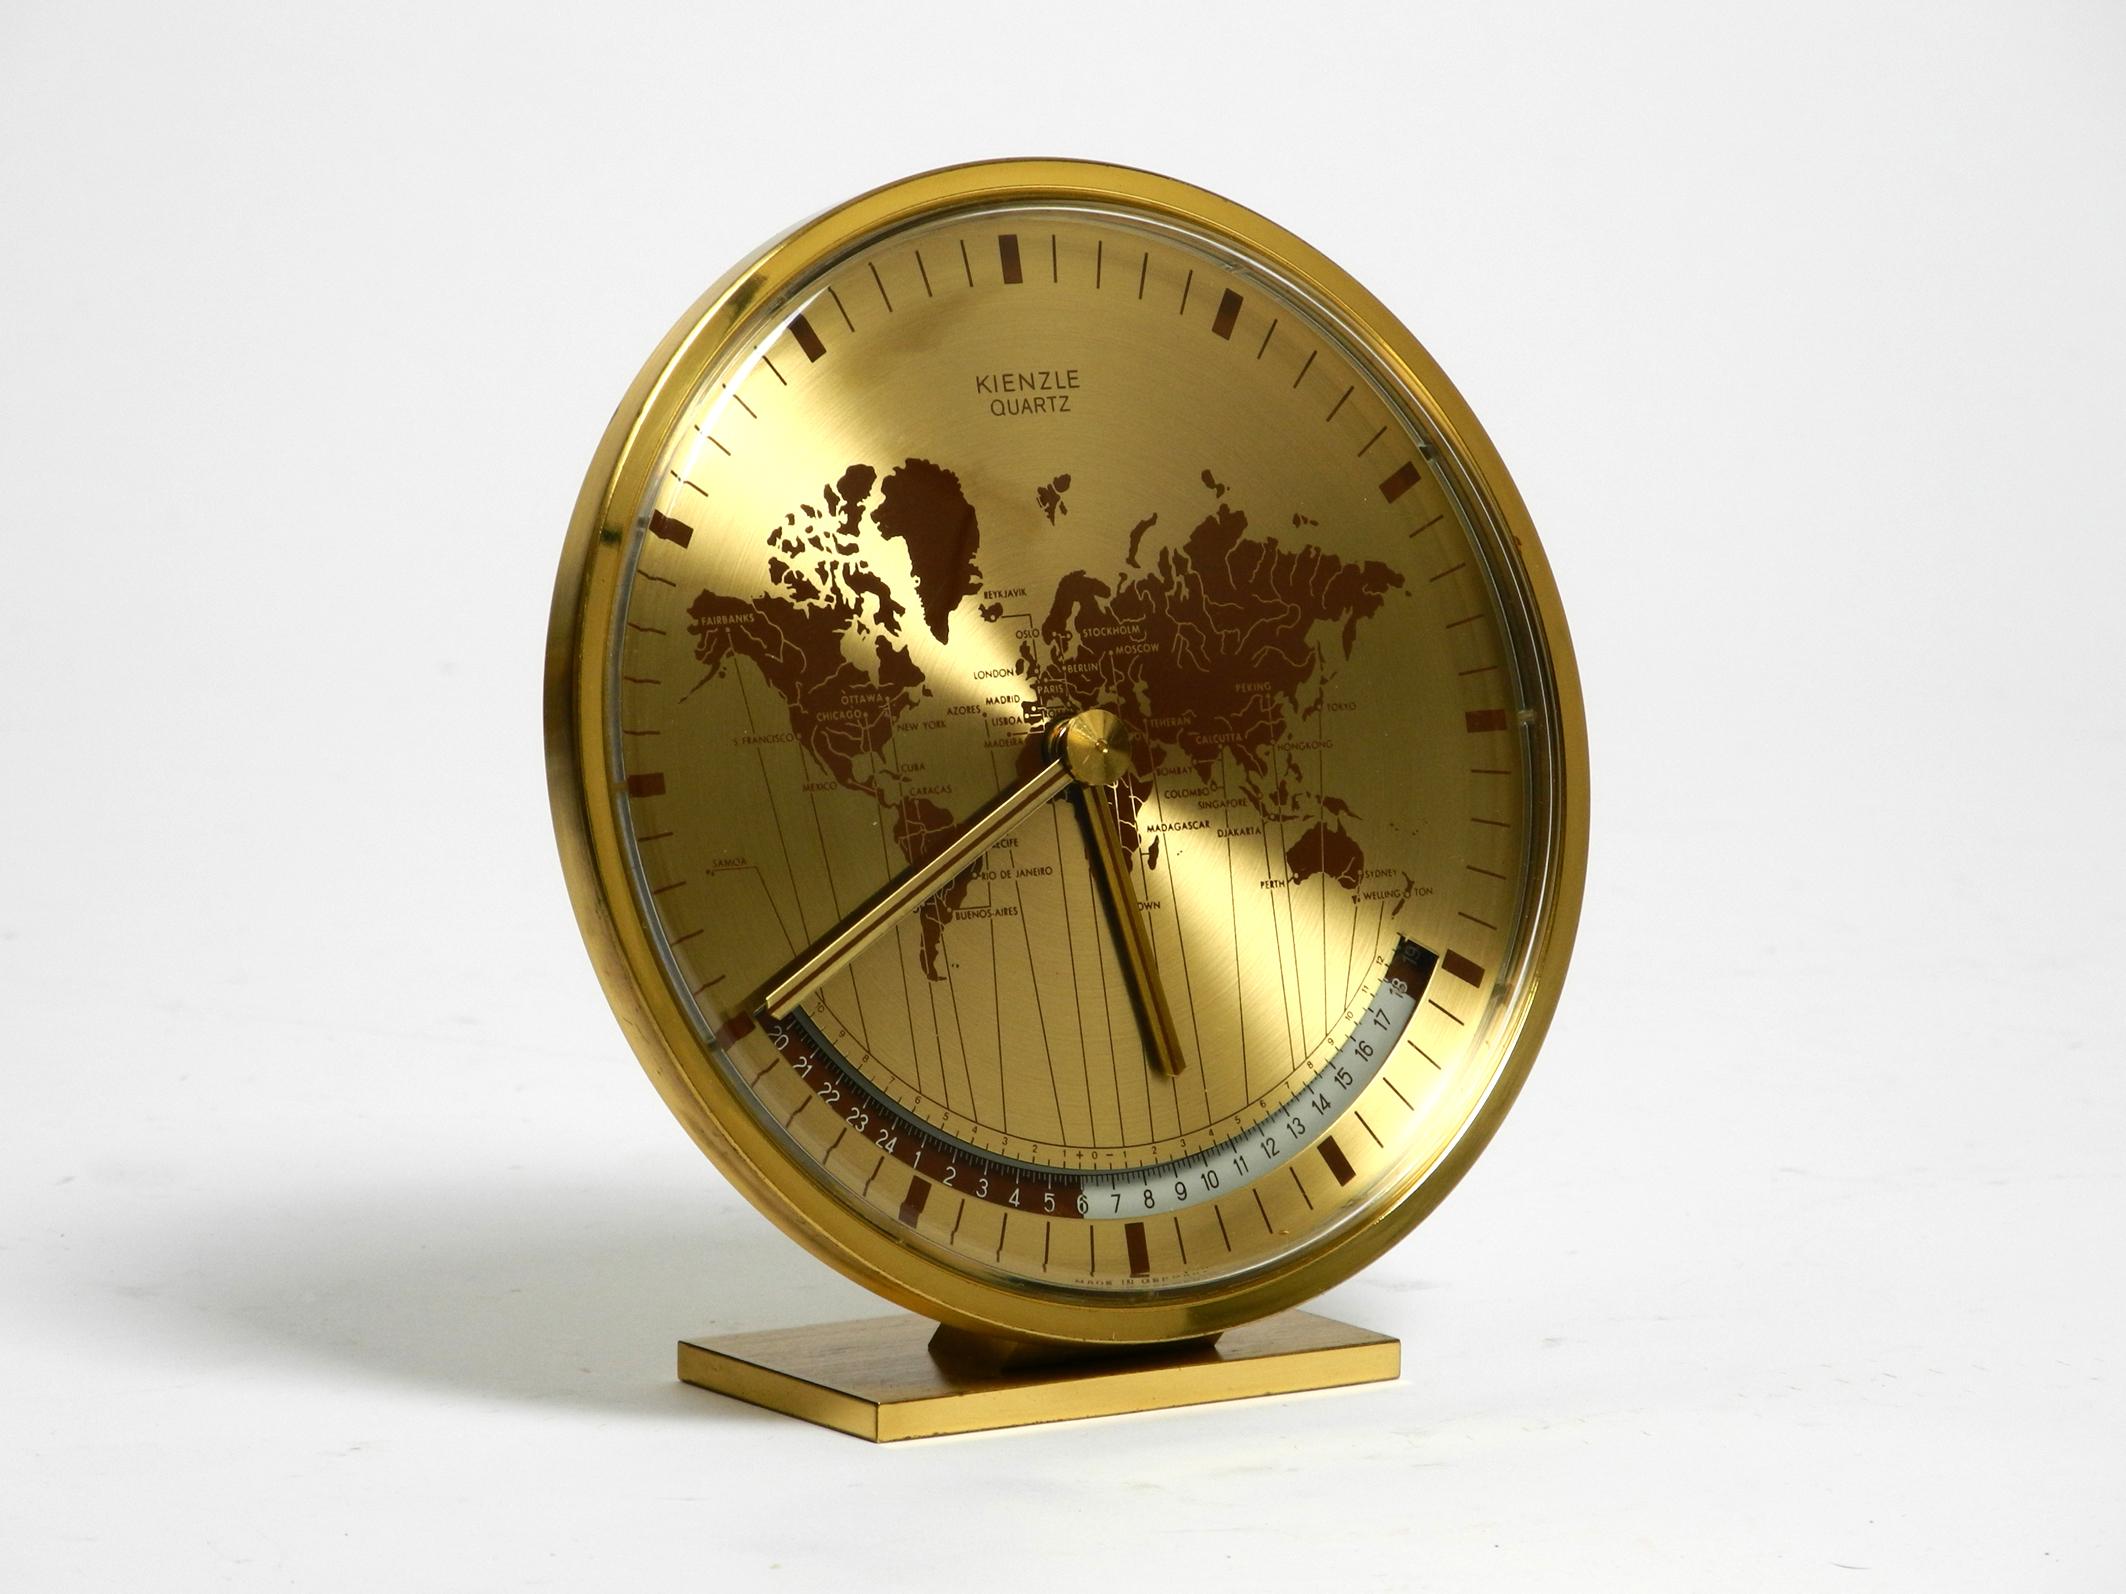 Rare horloge de table à heure universelle en laiton des années 1980 par Kienzle.
Reprend le design de Heinrich Johannes Möller. Fabriqué en Allemagne.
Kienzle est la plus ancienne entreprise d'horlogerie d'Allemagne.
Le boîtier est en métal anodisé